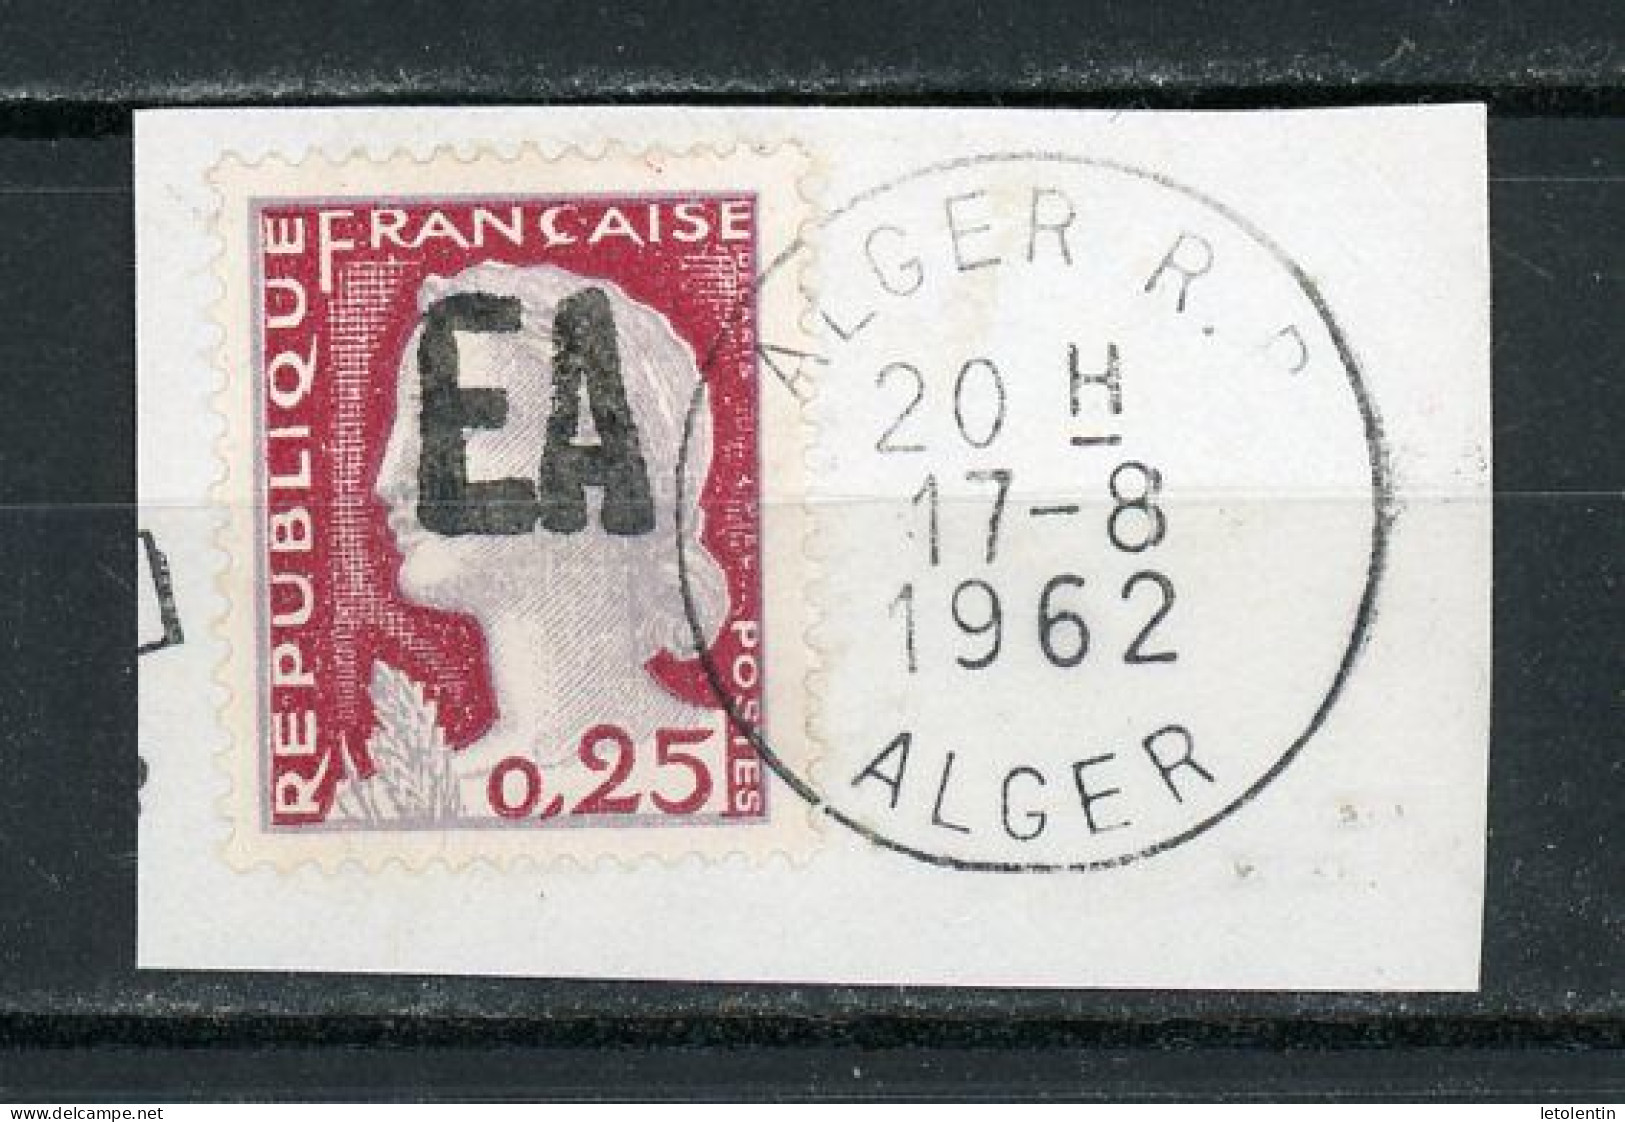 ALGÉRIE : M. DE DECARIS - (SURCH. EA) N° Yvert 355 Obli. "RÉPUBLIQUE FRANÇAISE" NON RAYÉ (SUR FRAGMENT) - Algerije (1962-...)